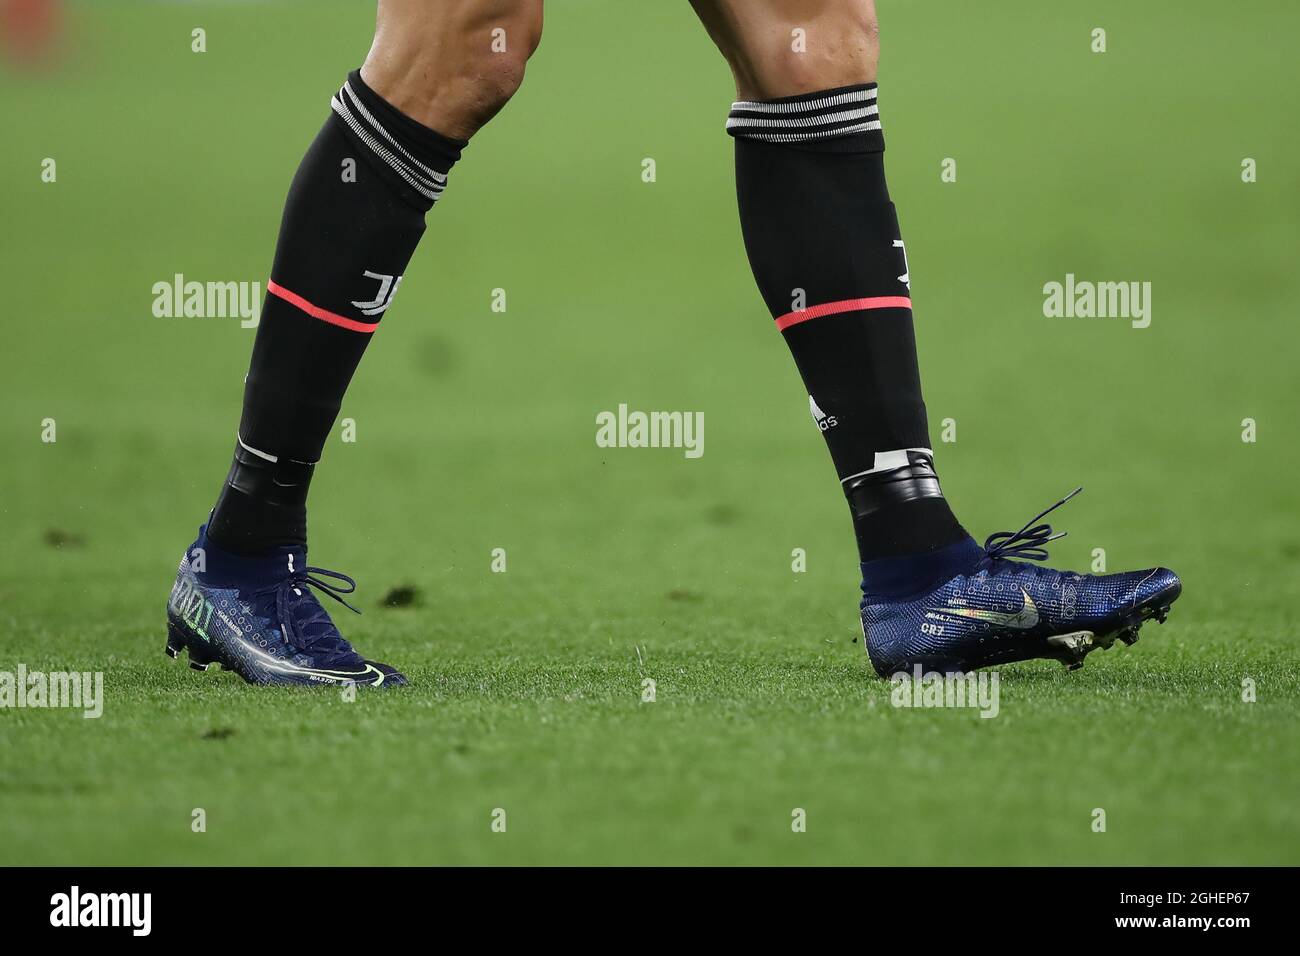 Cristiano Ronaldo de Juventus modela una nueva versión las botas de fútbol Nike Mercurial durante el partido de la UEFA Champions League en el Juventus Stadium de Turín. Fecha de la